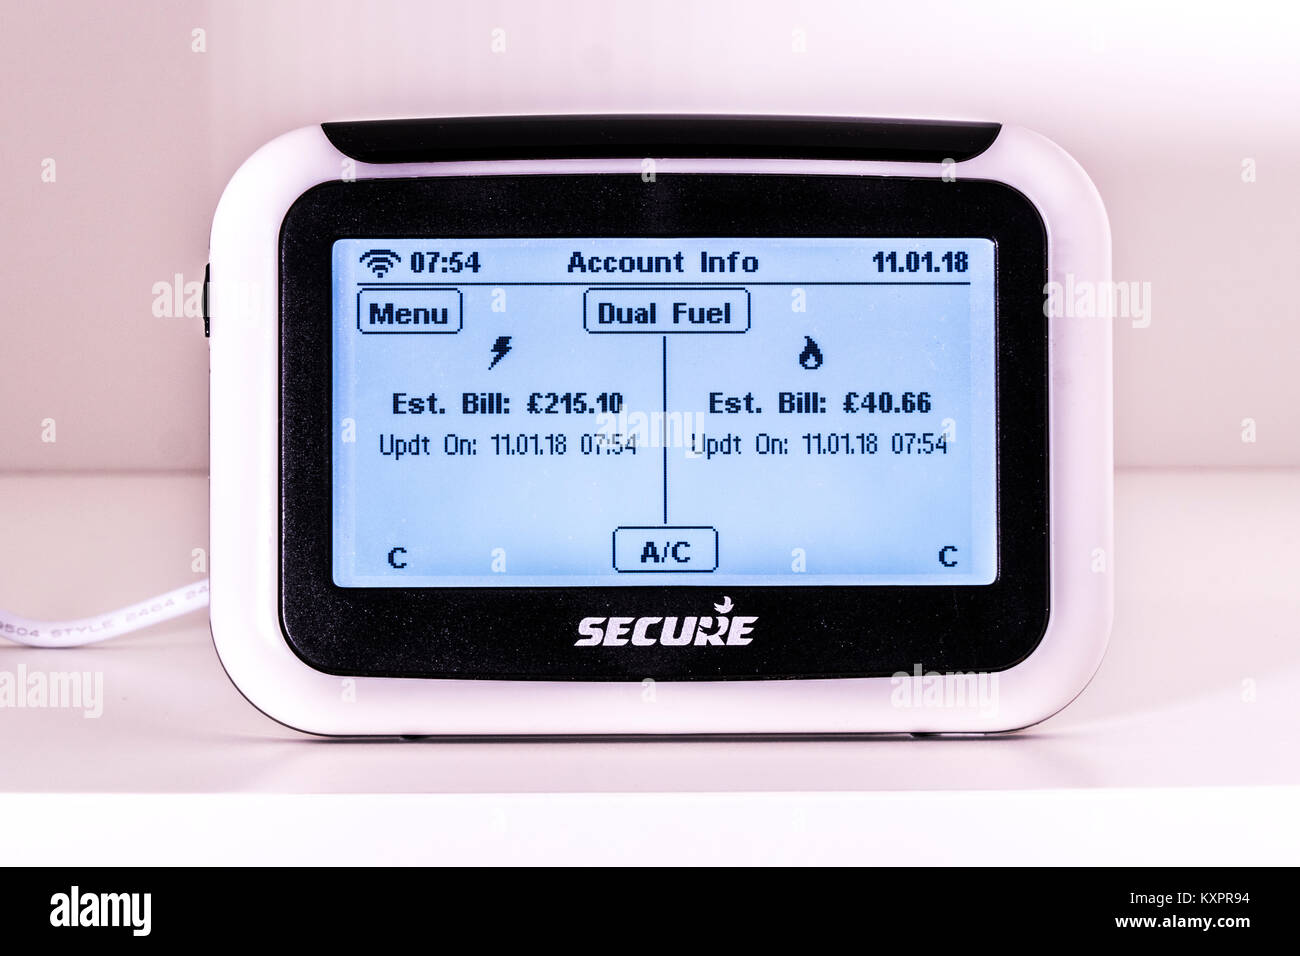 Doppia alimentazione smart meter da fissare, con display luminoso mostra account utente stimato di sterline fatture per i gas e il consumo di energia elettrica. Regno Unito. Foto Stock